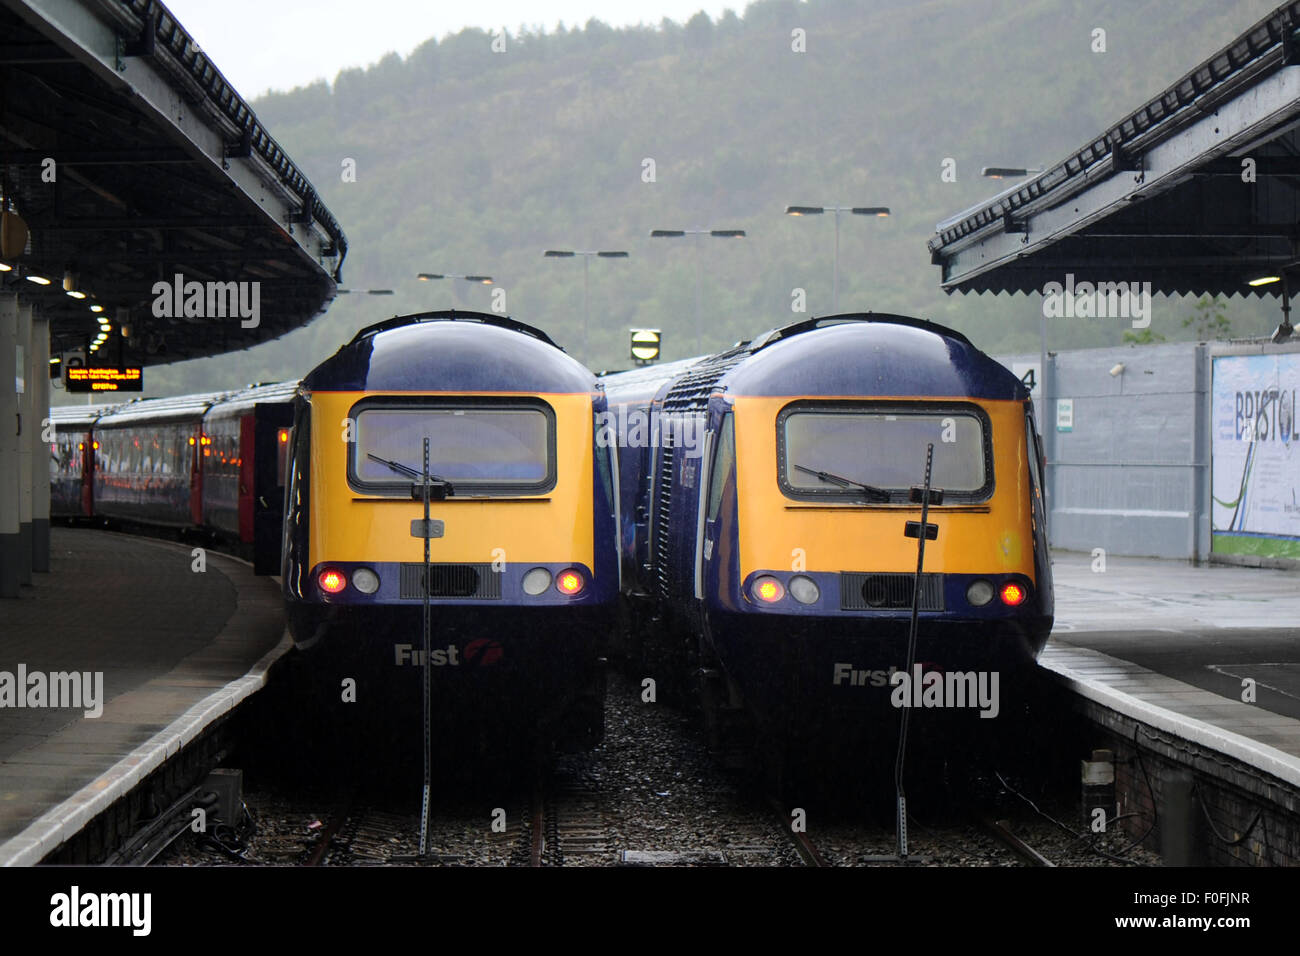 Zwei Züge der First Great Western bei Swansea Bahnhof. Stockfoto